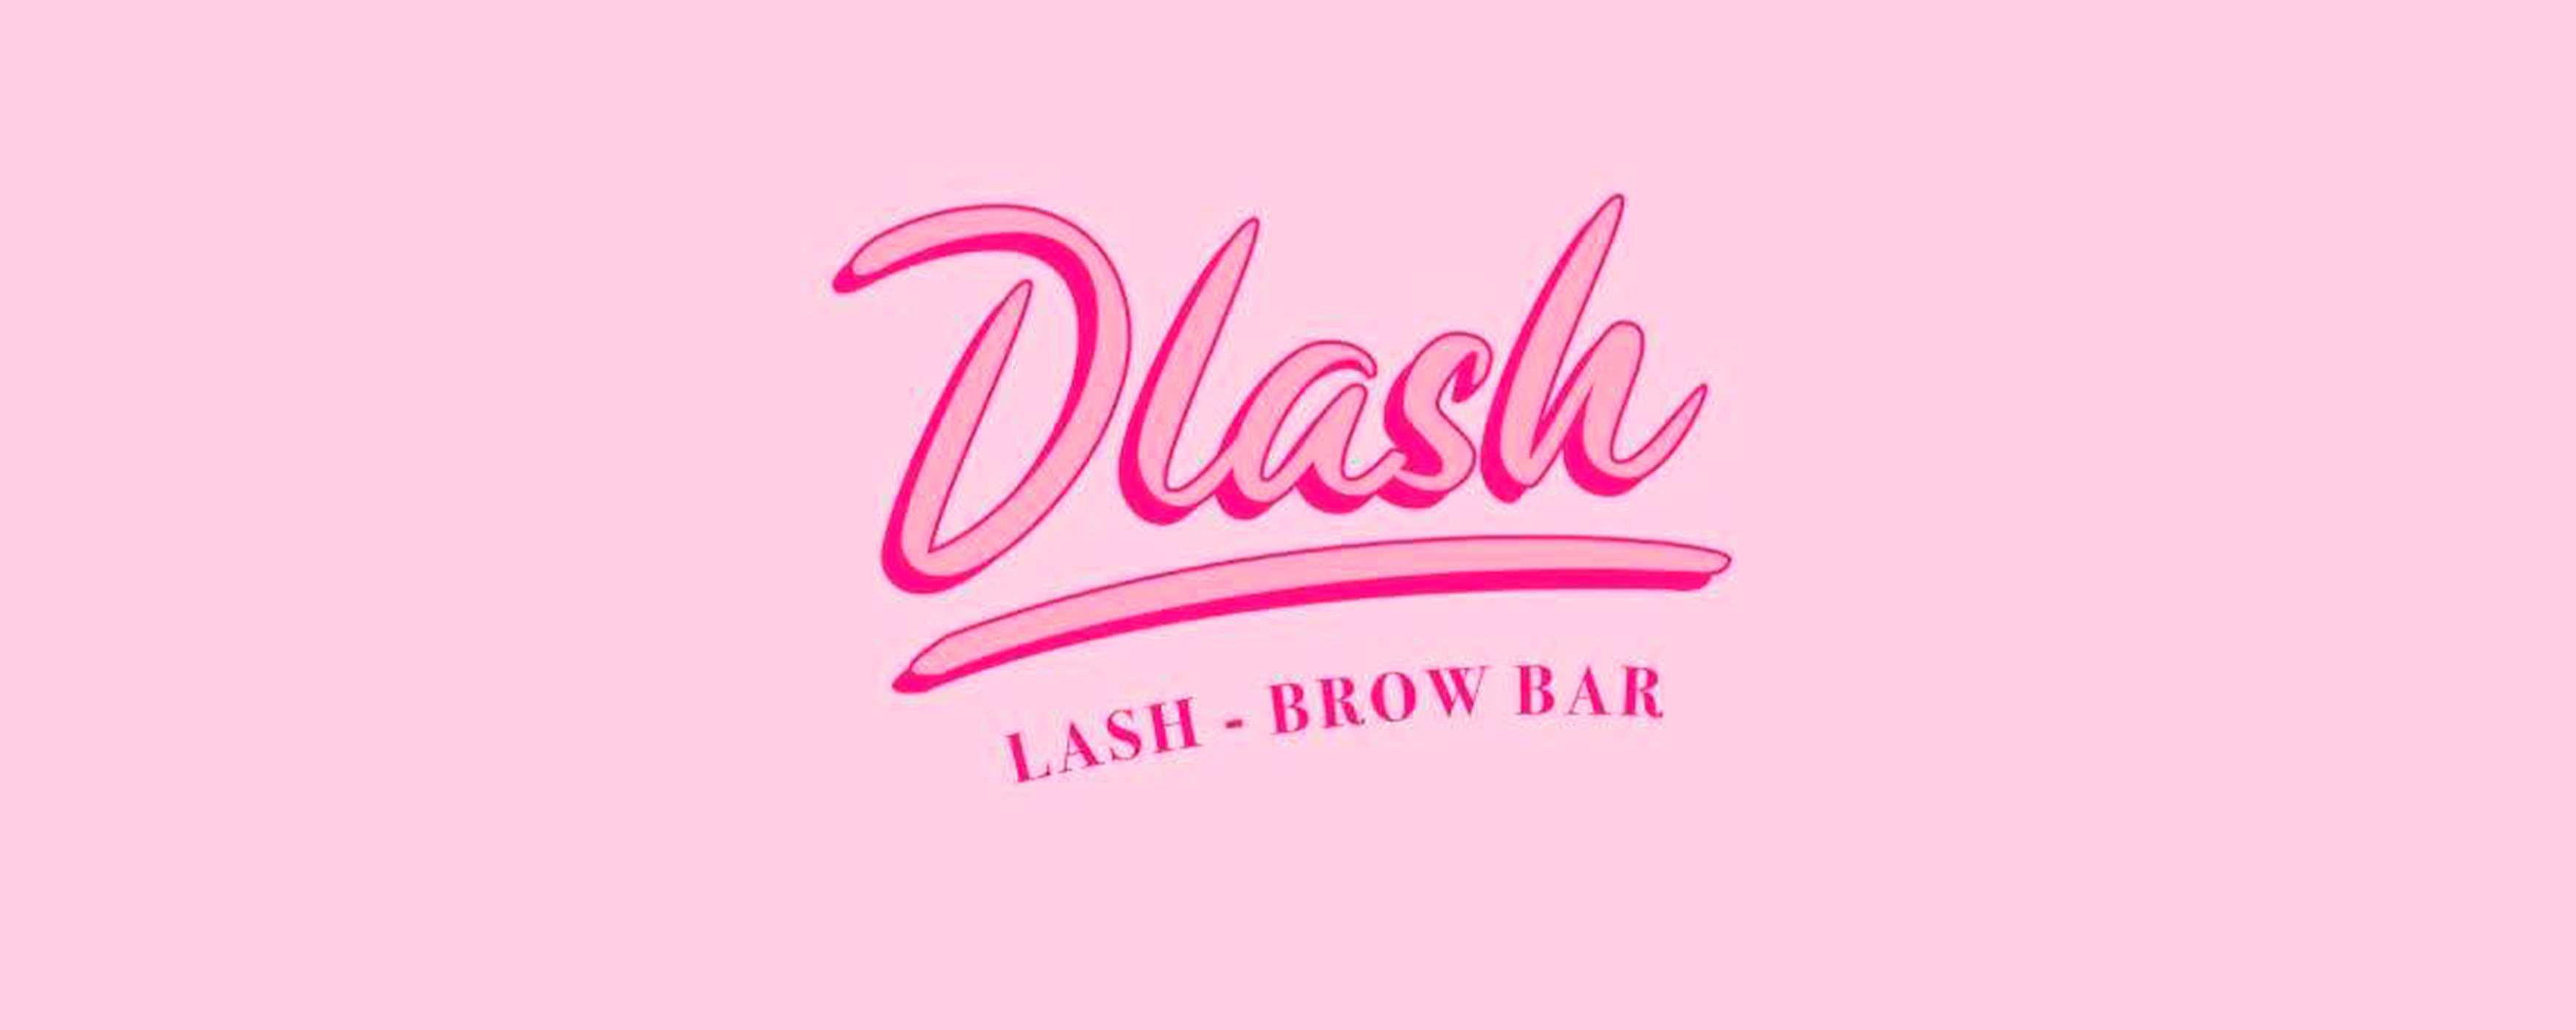 Dlash Beauty Bar